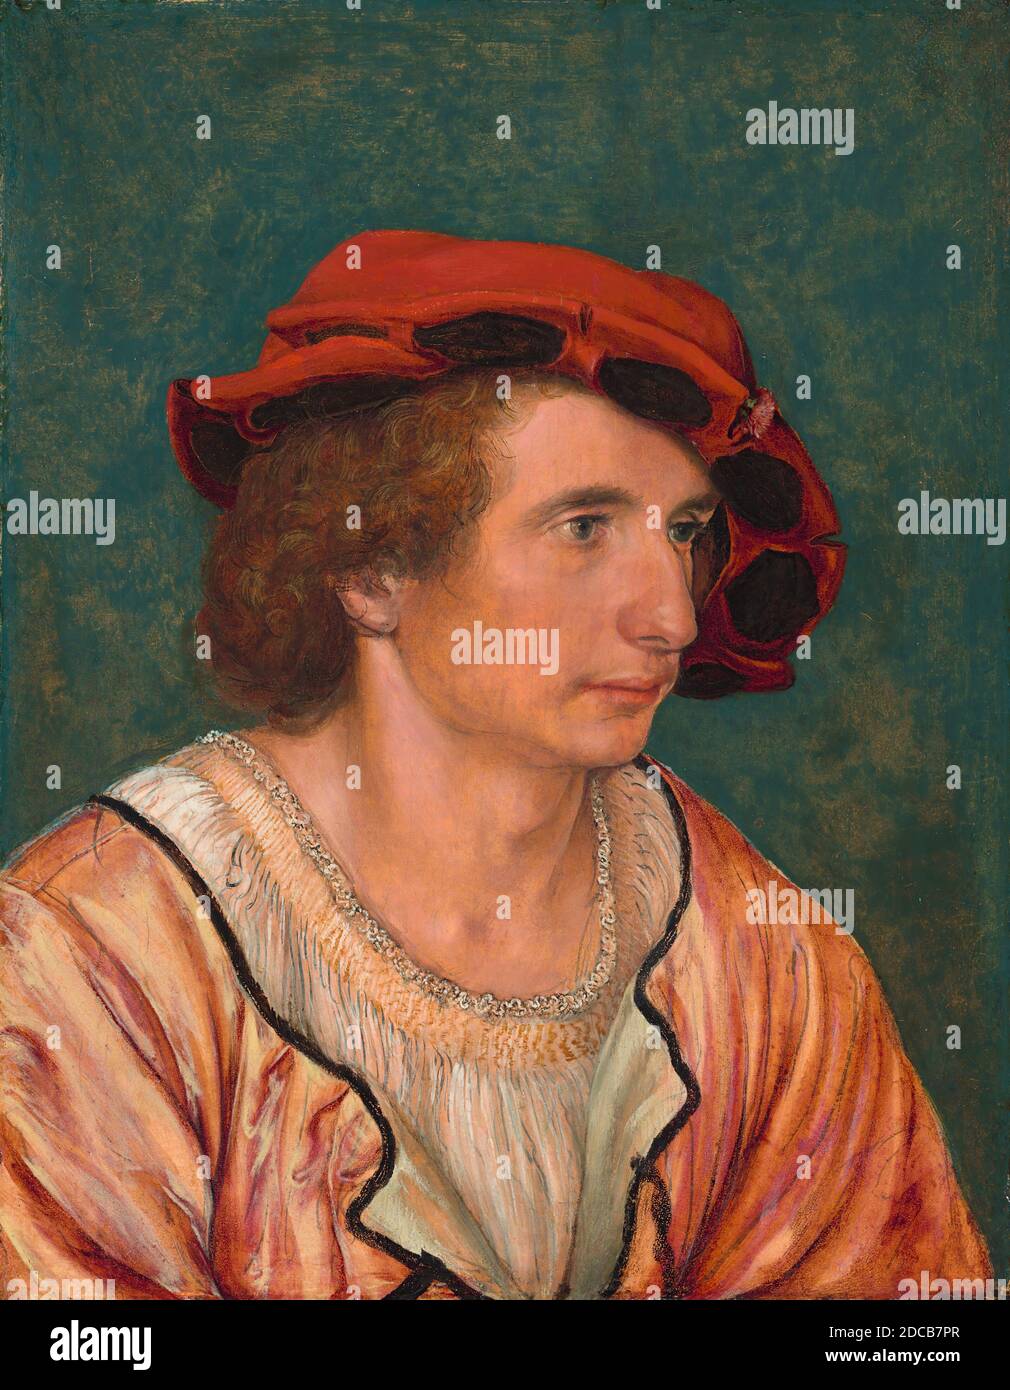 Hans Holbein el joven, (pintor), alemán, 1497/1498 - 1543, Retrato de un  joven, c. 1520/1530, aceite sobre panel, superficie pintada: 22 x 17 cm (8  11/16 x 6 11/16 in.), soporte: 23.2